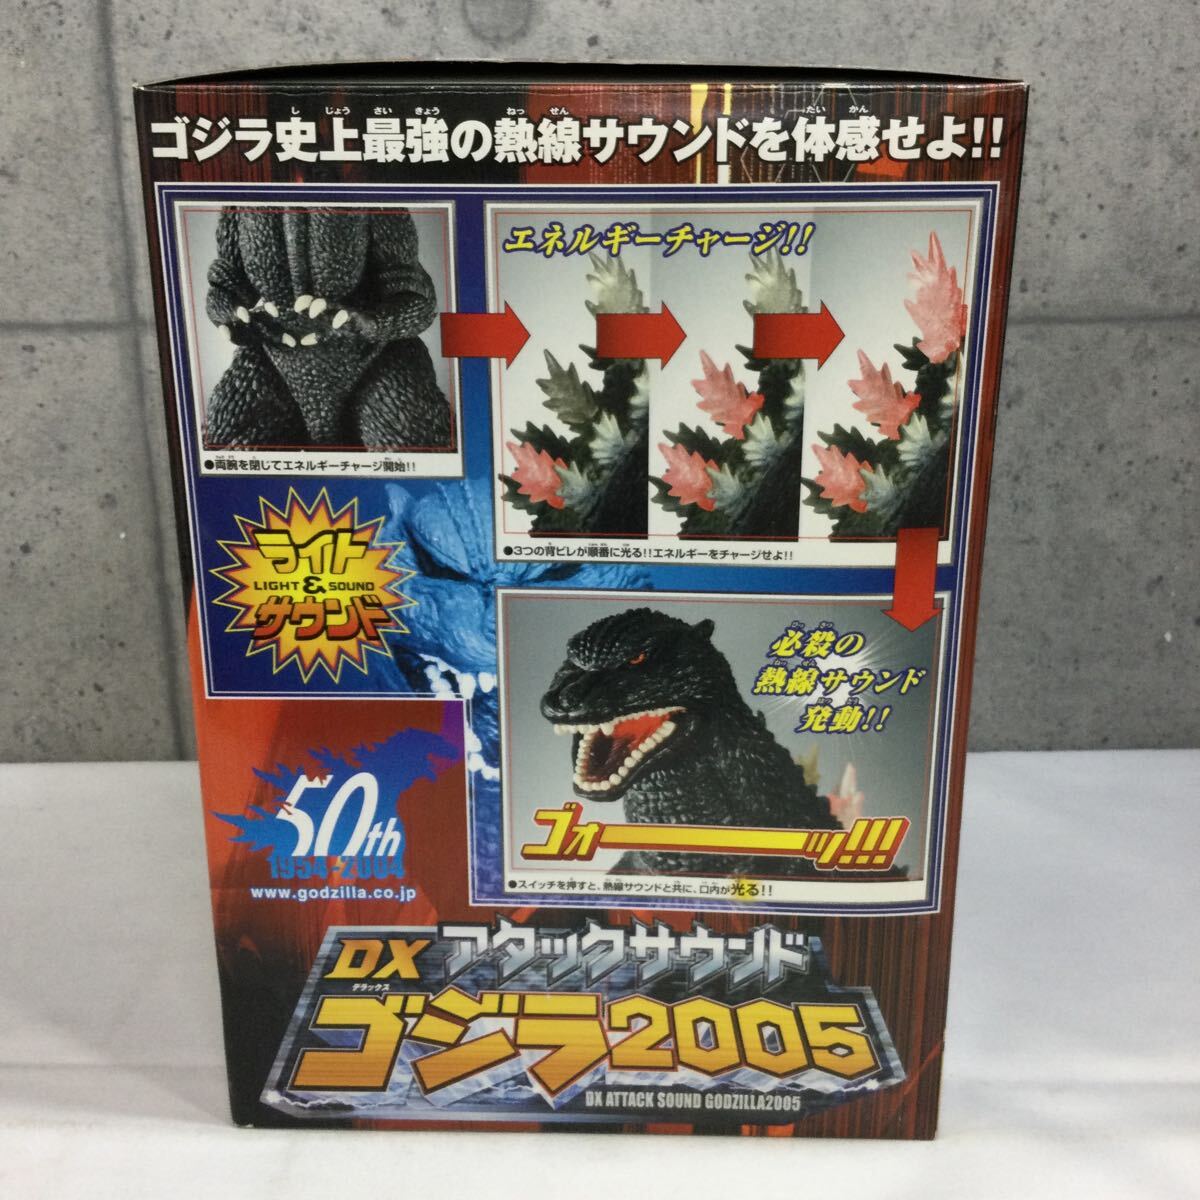 *[BANDAI/ Bandai ]DX attack звук Godzilla 2005 колебание сенсор установка хобби игрушка подлинная вещь почти нераспечатанный не собран * одиночный 4 батарейка ×3 необходимо 